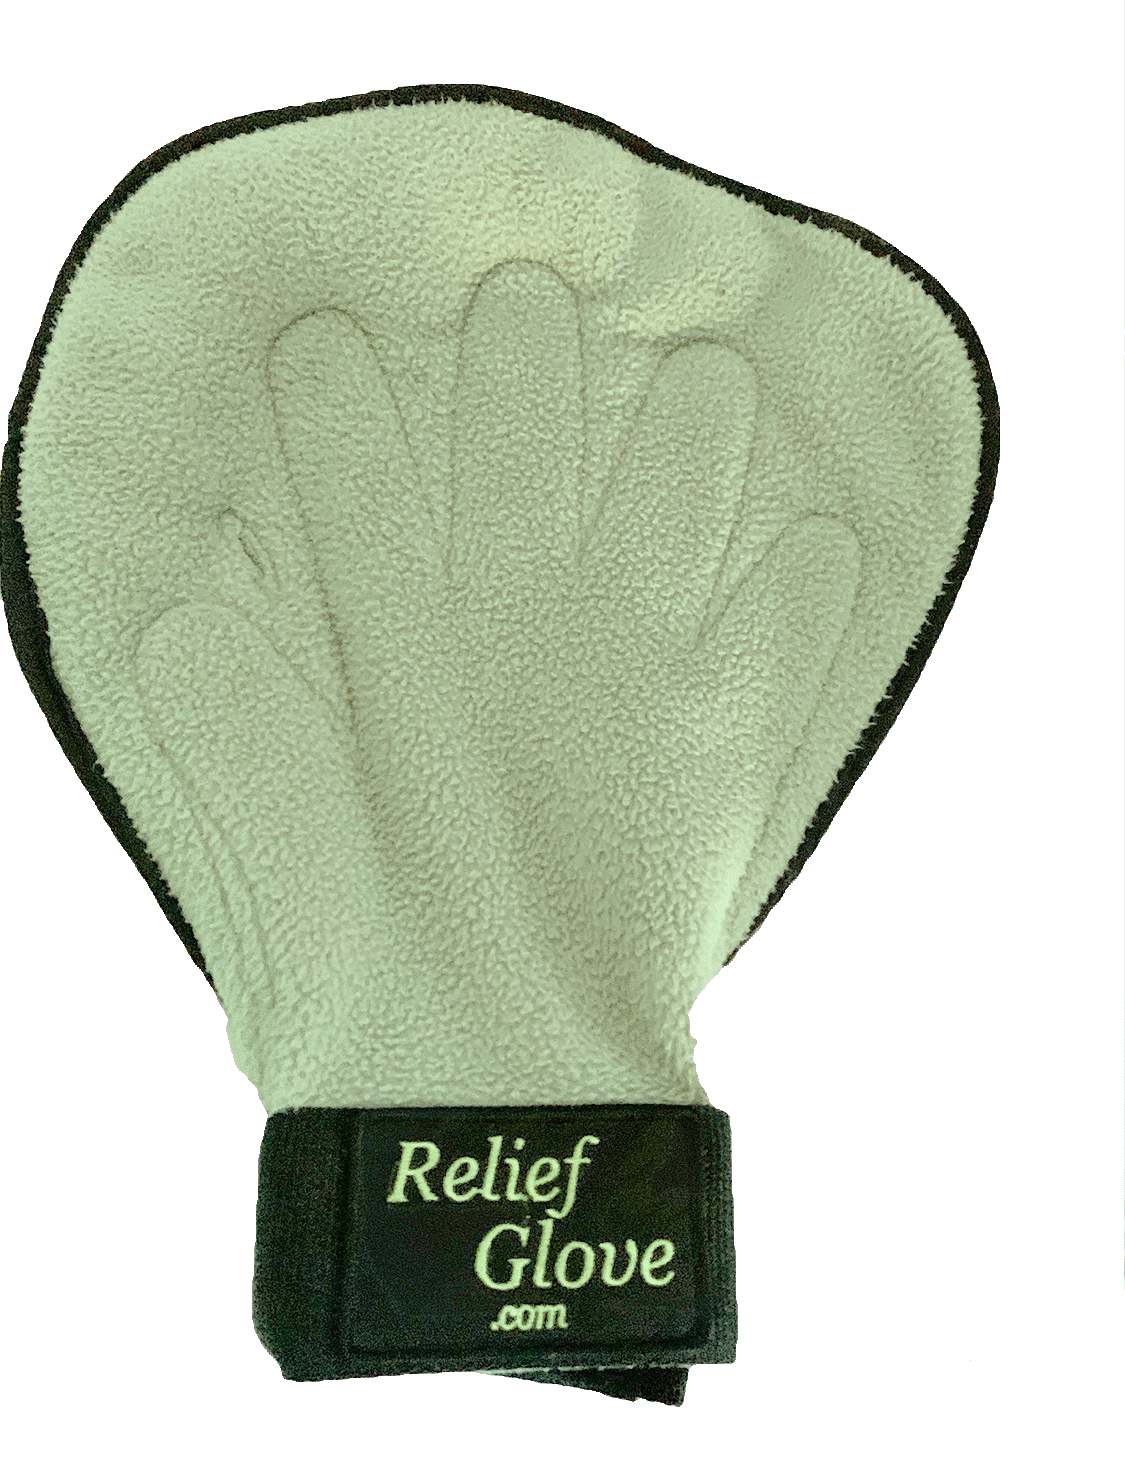 relief glove topside